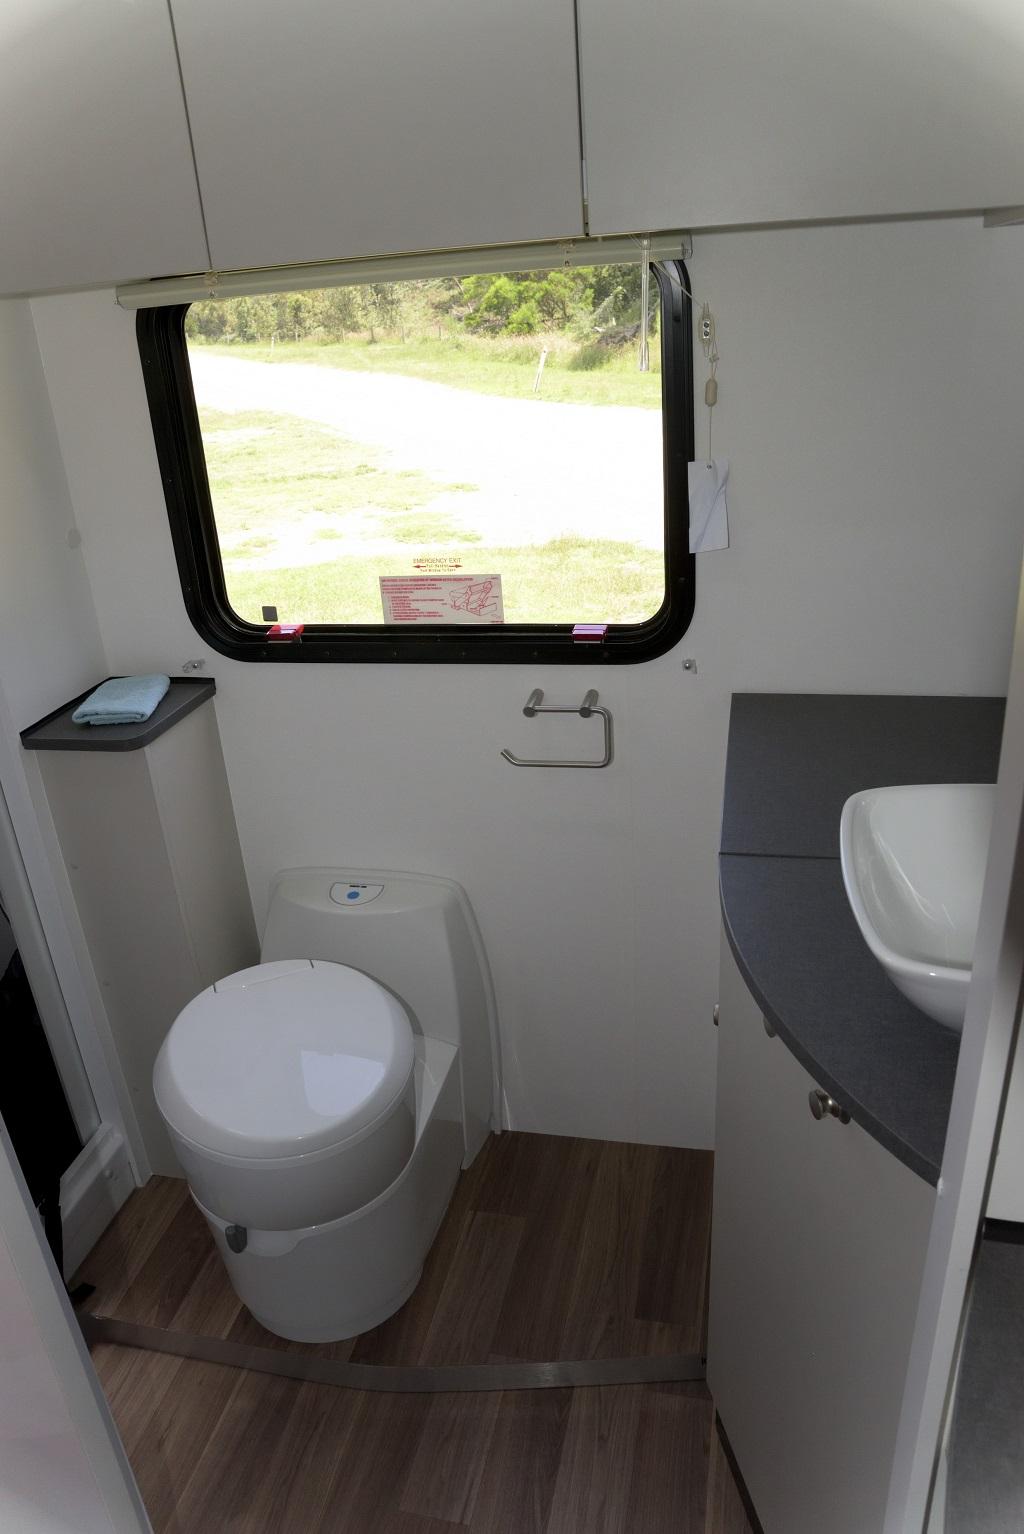 Toilets for caravans 